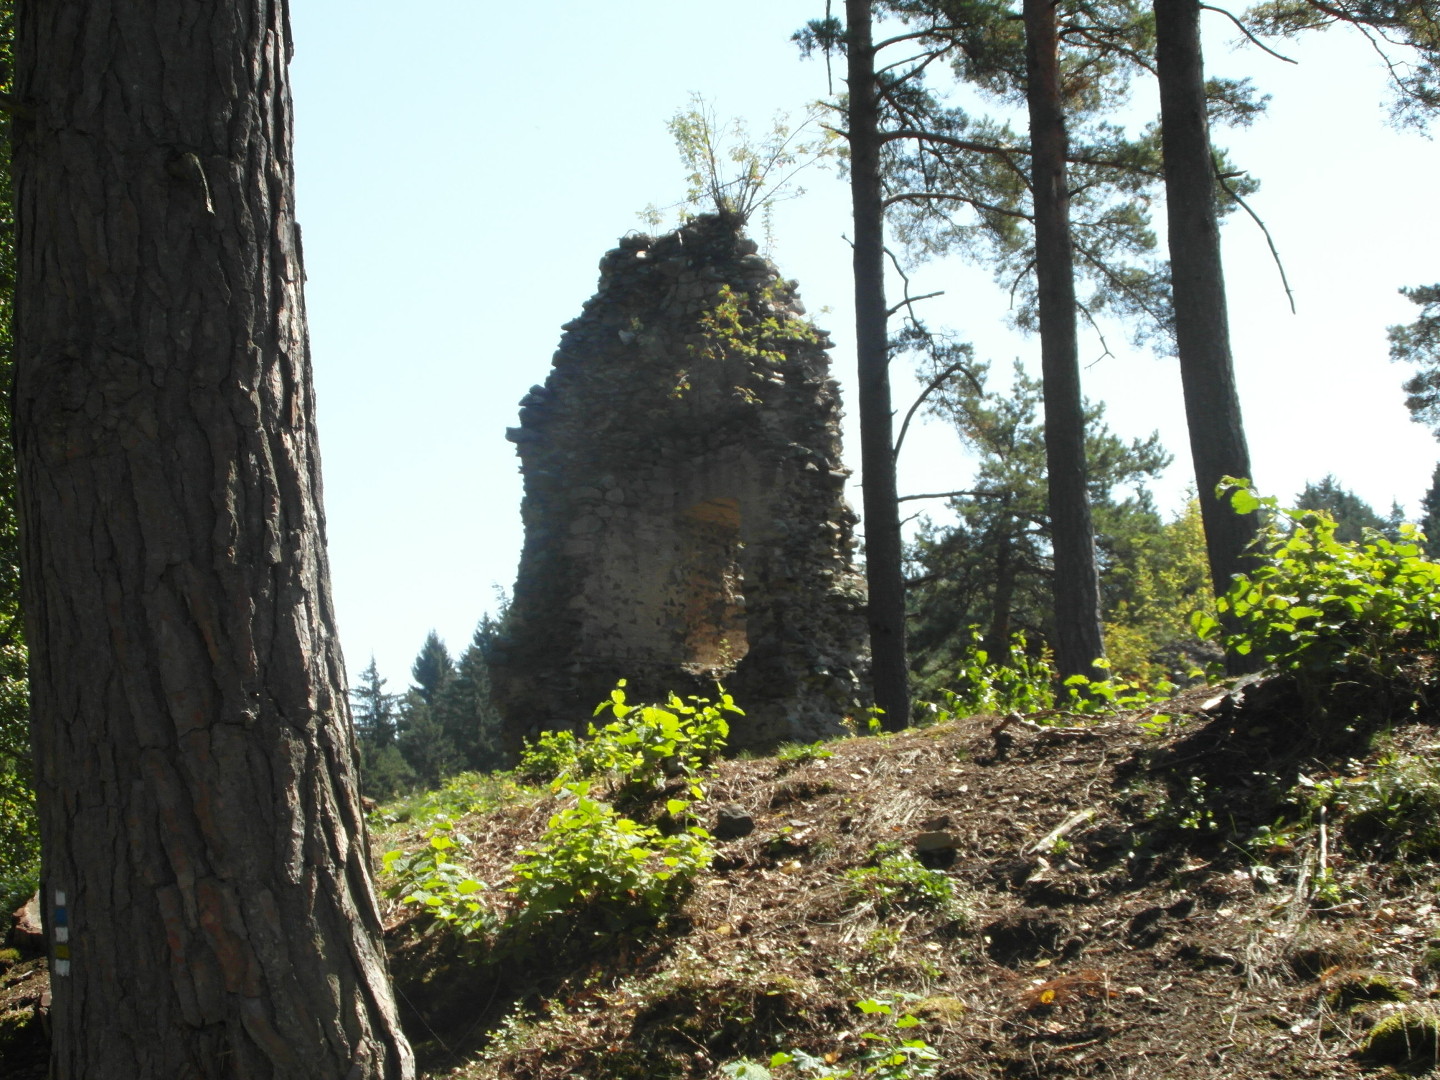 Na fotografii je vidt horn st ruiny ve se vstupnm portlem, porost a stromy. 
  Na sti zdi jsou zbytky omtky. Zbr je zdola. Na vrcholu zdi je legran kek.